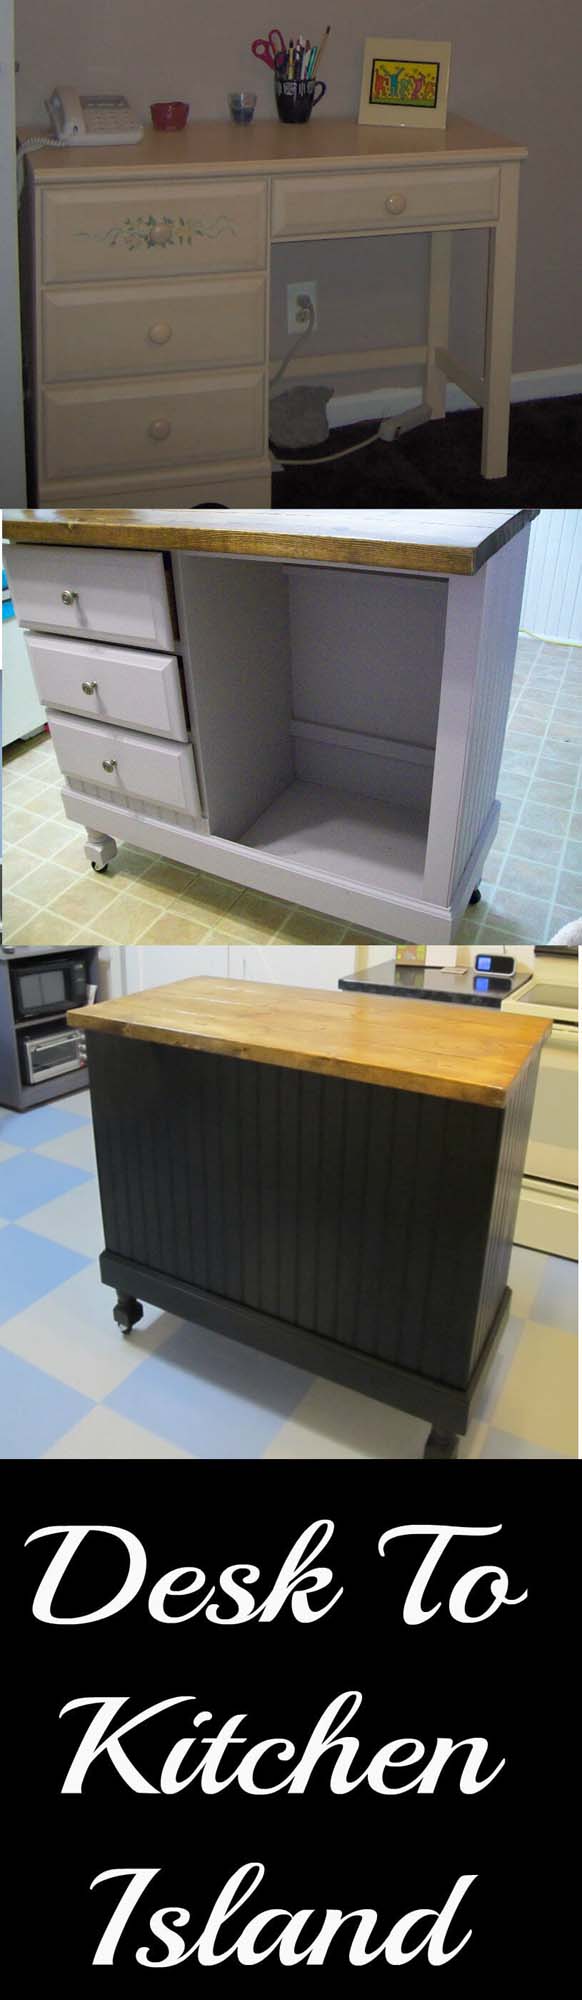 Make Your Kitchen Island with a Few Mods to This Desk #diy #ktichenisland #decorhomeideas